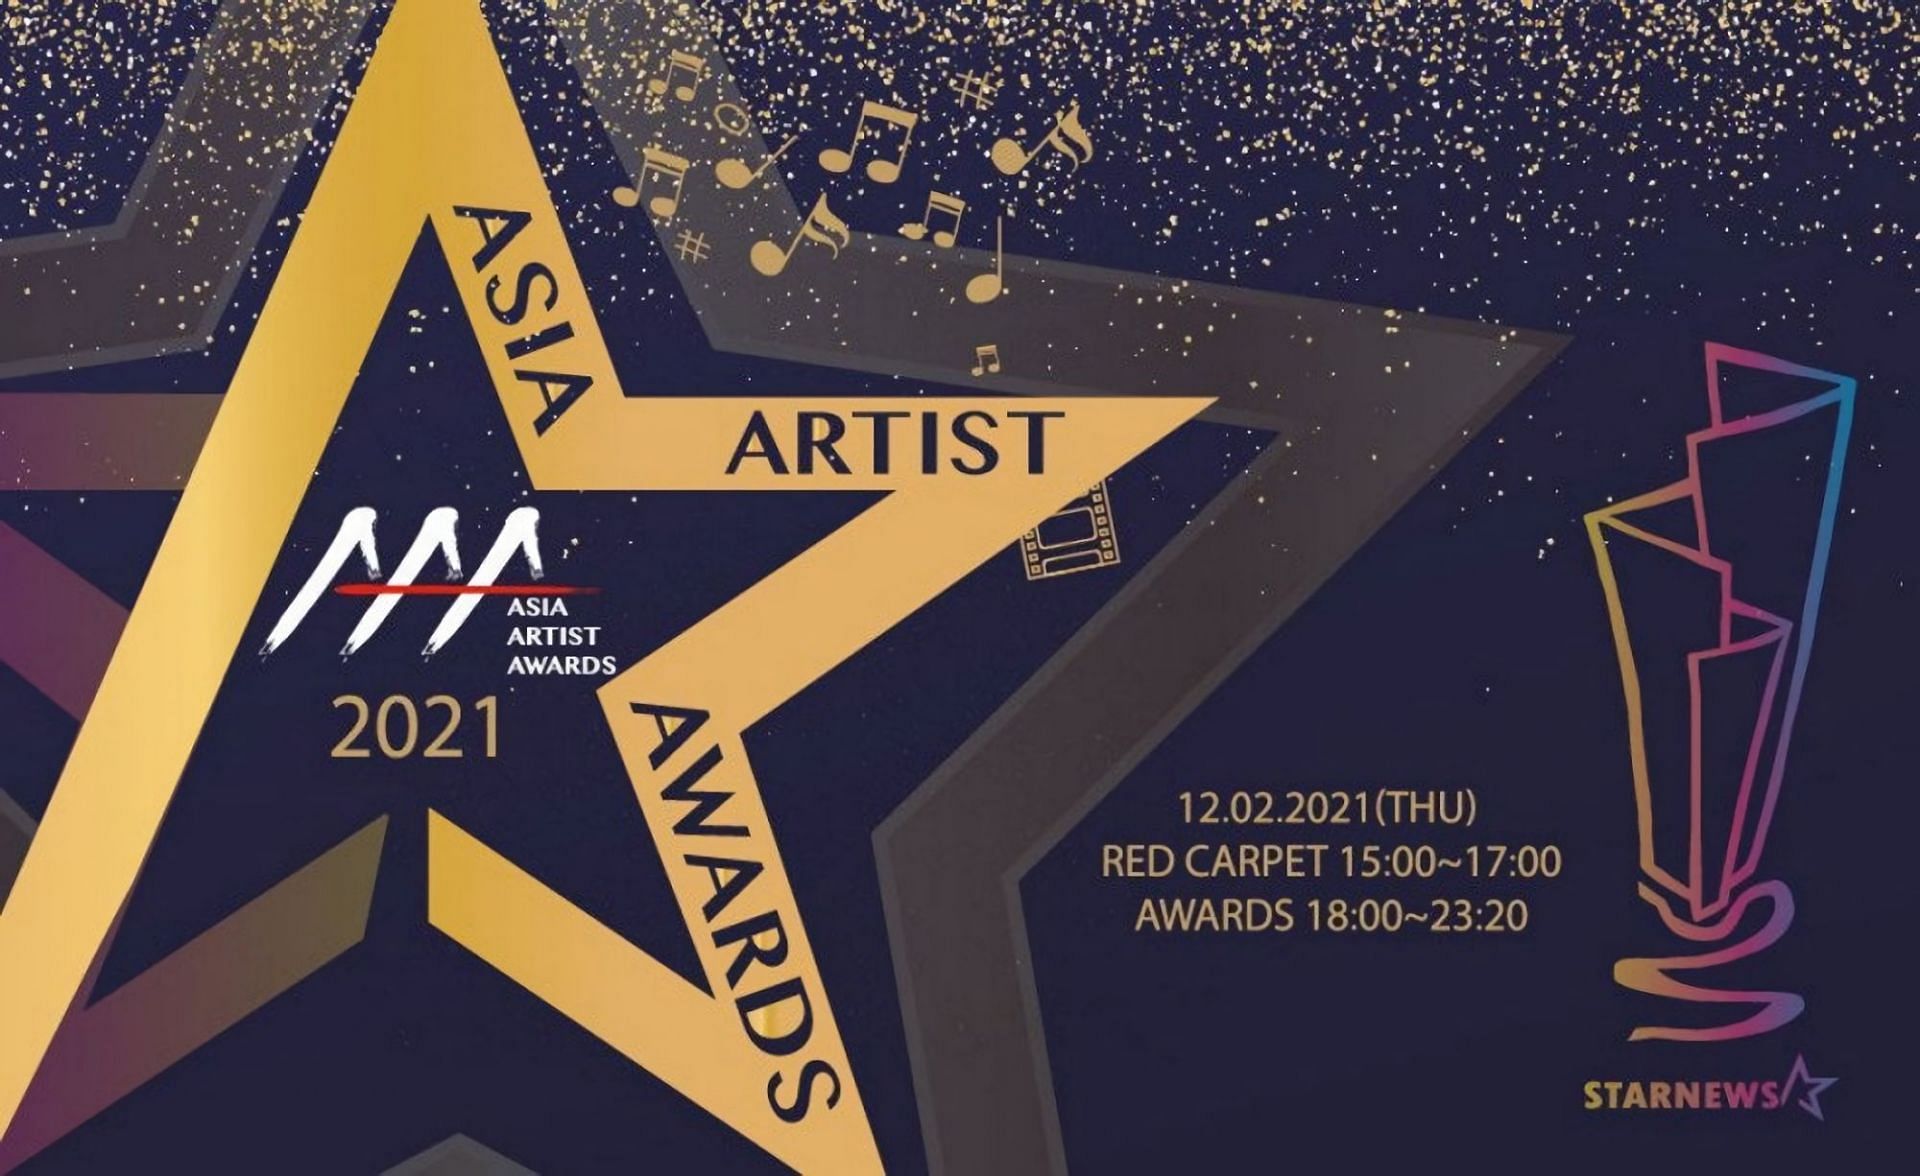 Aaa awards 2021